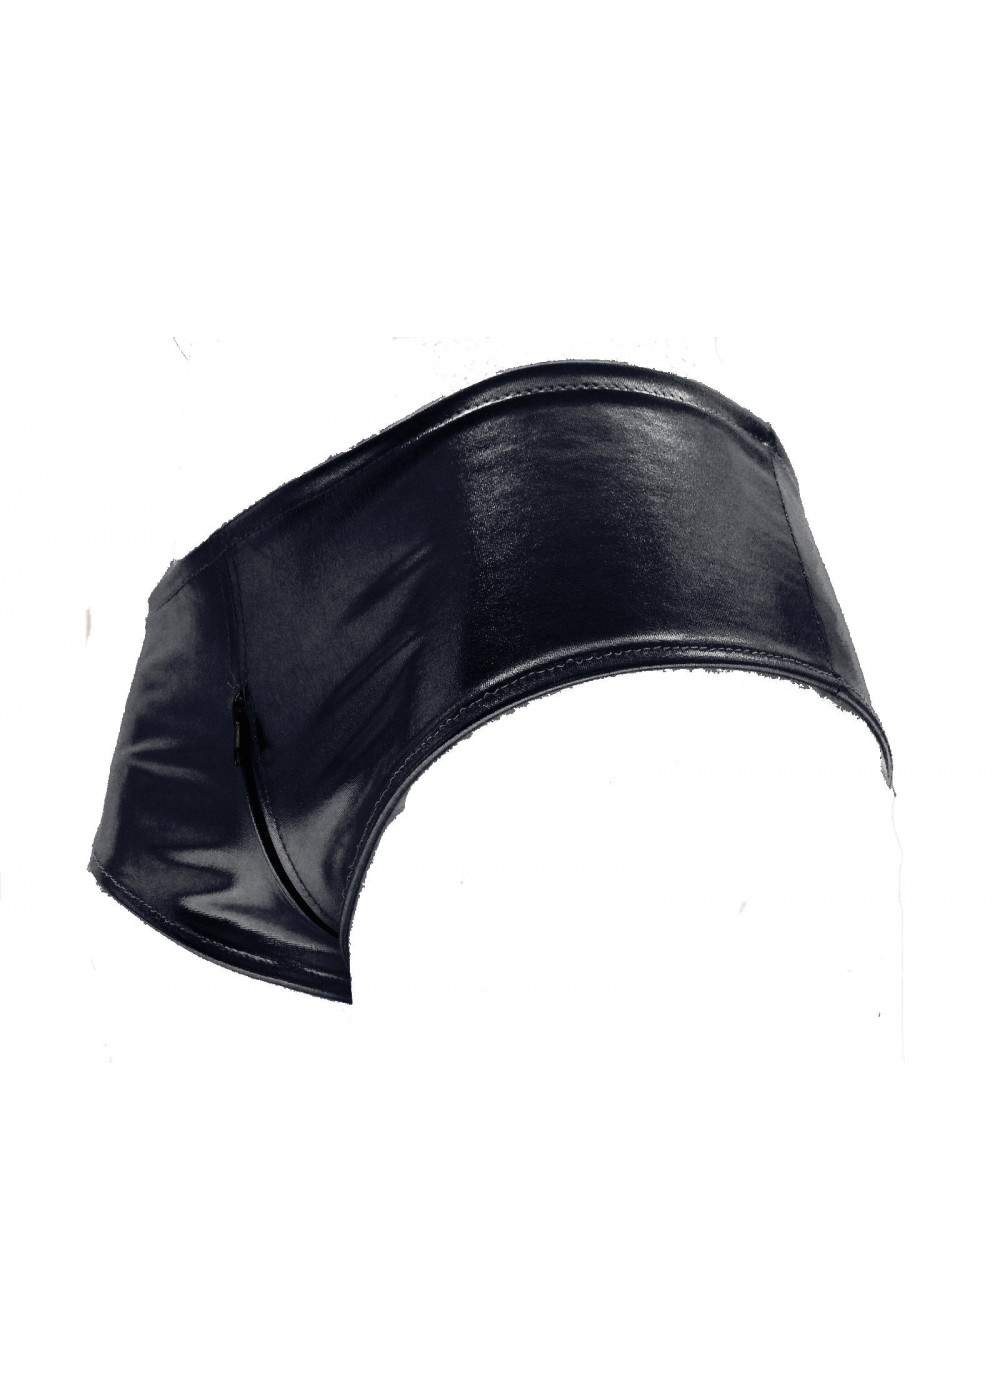 Pantalones calientes Ouvert de cuero negro con cremallera Tallas 32 - 52